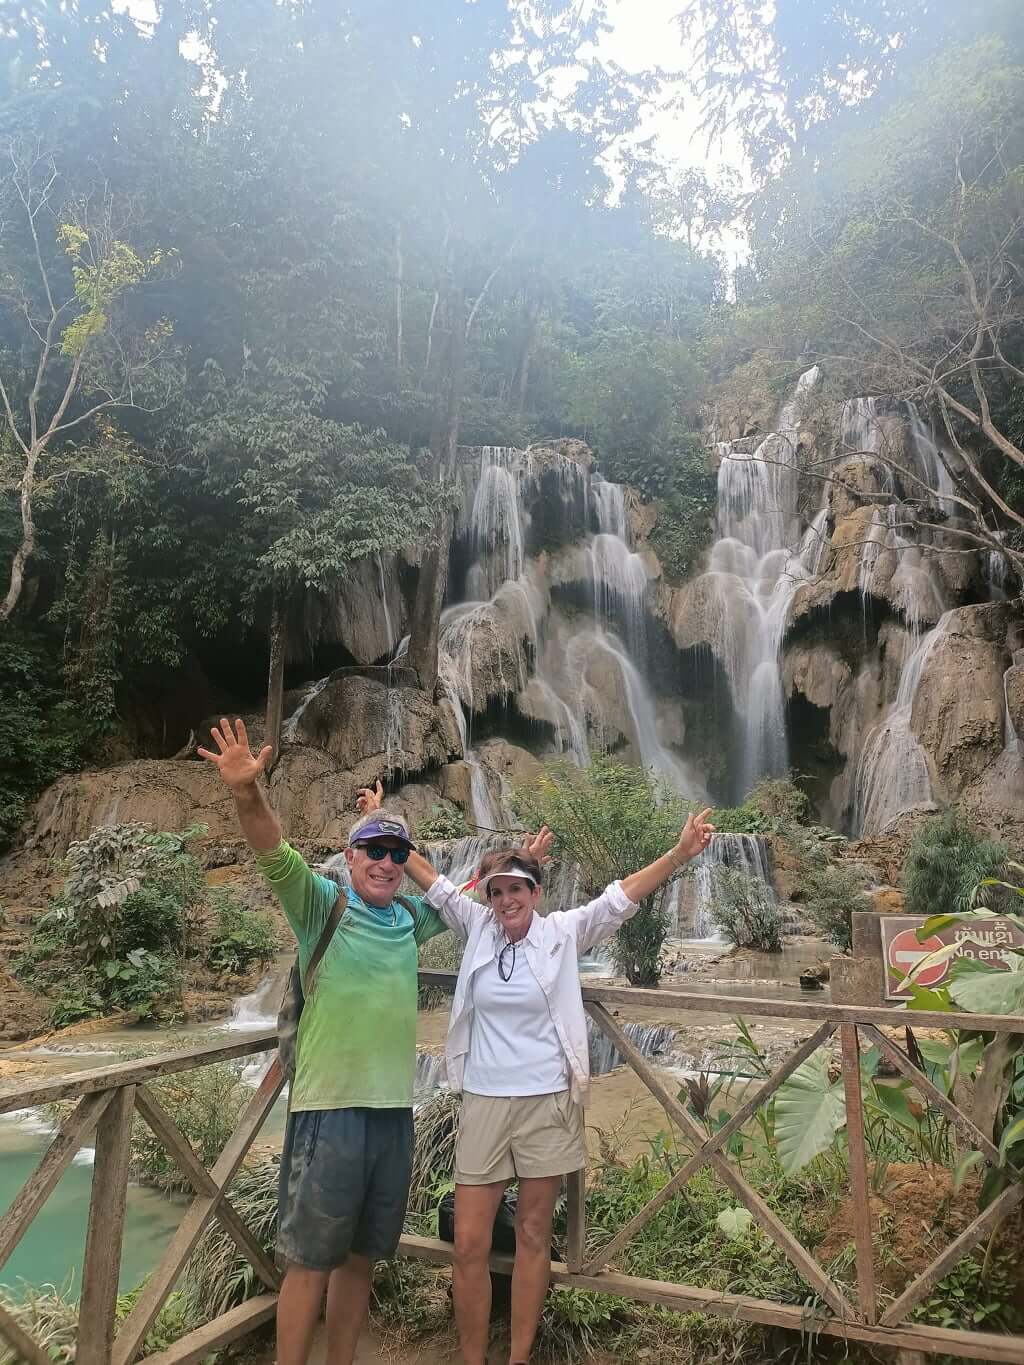 Authentic-Laos-Itinerary-10-Days-Kuang-Si-Waterfall-Luang-Prabang-1.jpg